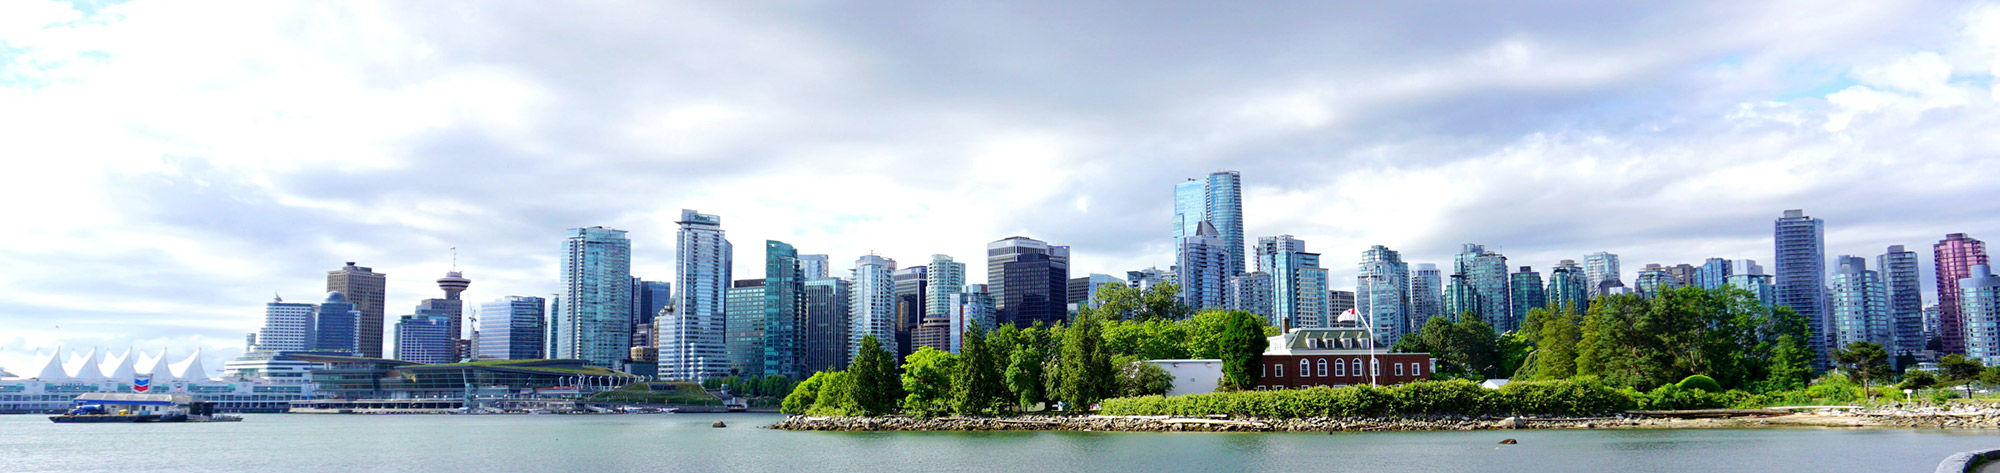 BeKaTec Canada Vancouver Panorama